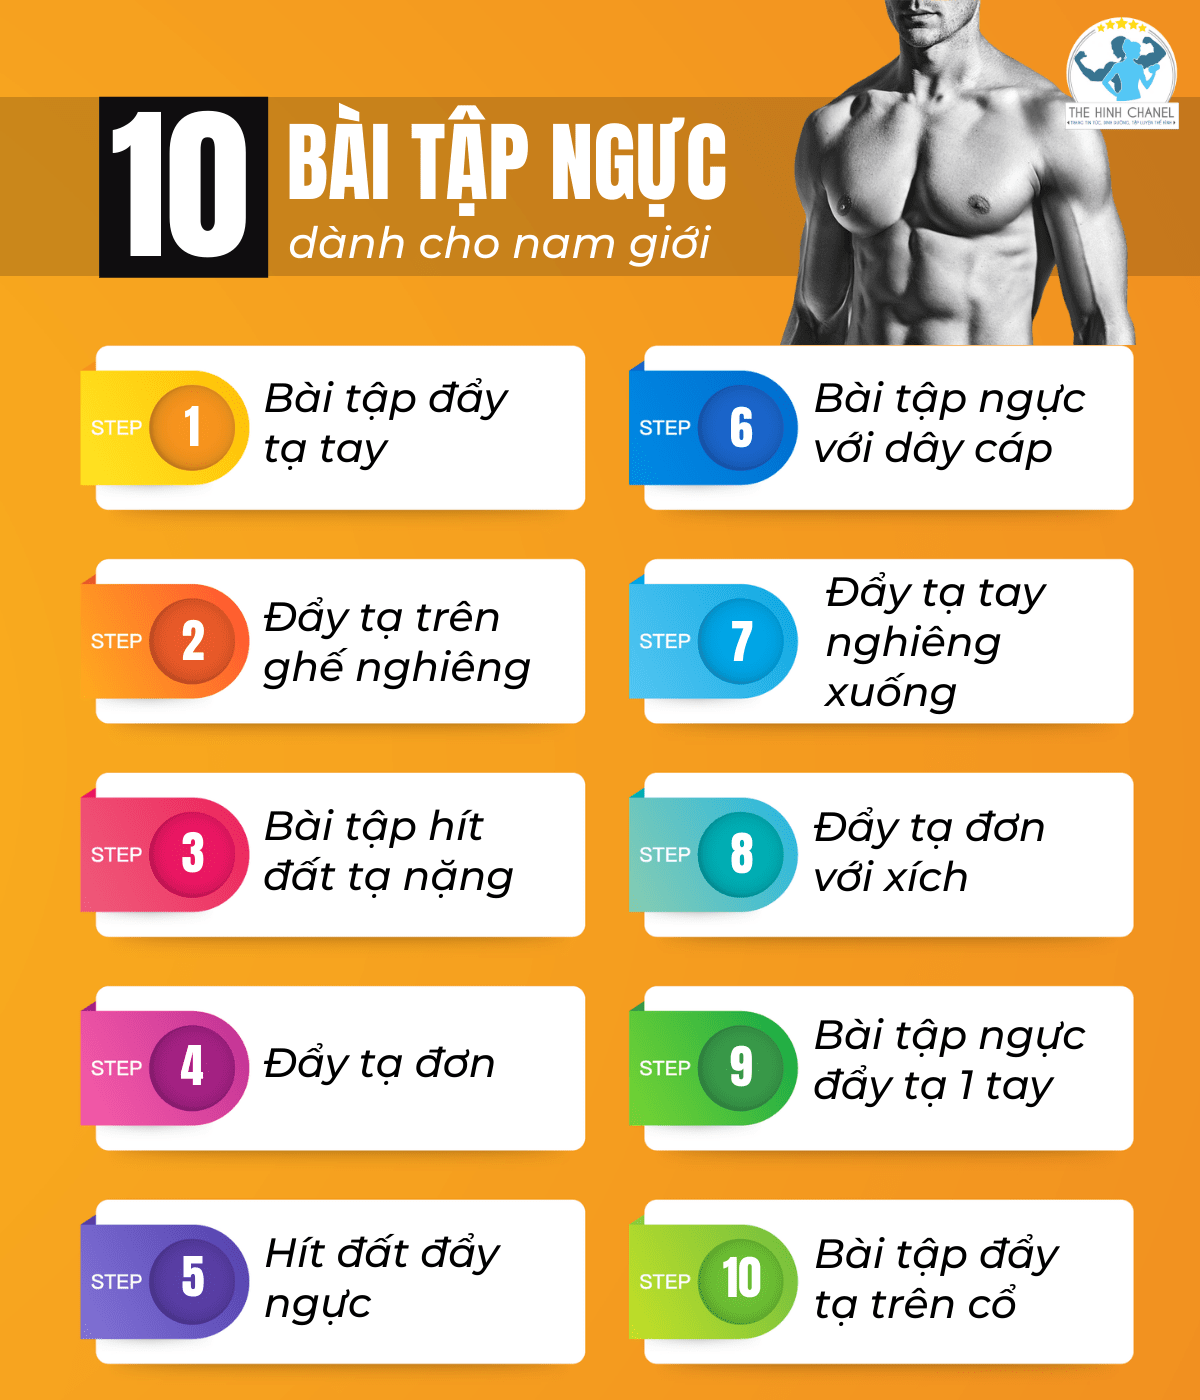 Dưới đây là 11 Lỗi thường gặp trong tập ngực thường gặp phải, các bạn cần tránh.  Tìm hiểu ngay thông tin cùng 10 bài tập ngực hiệu quả nhất dành cho nam giới...